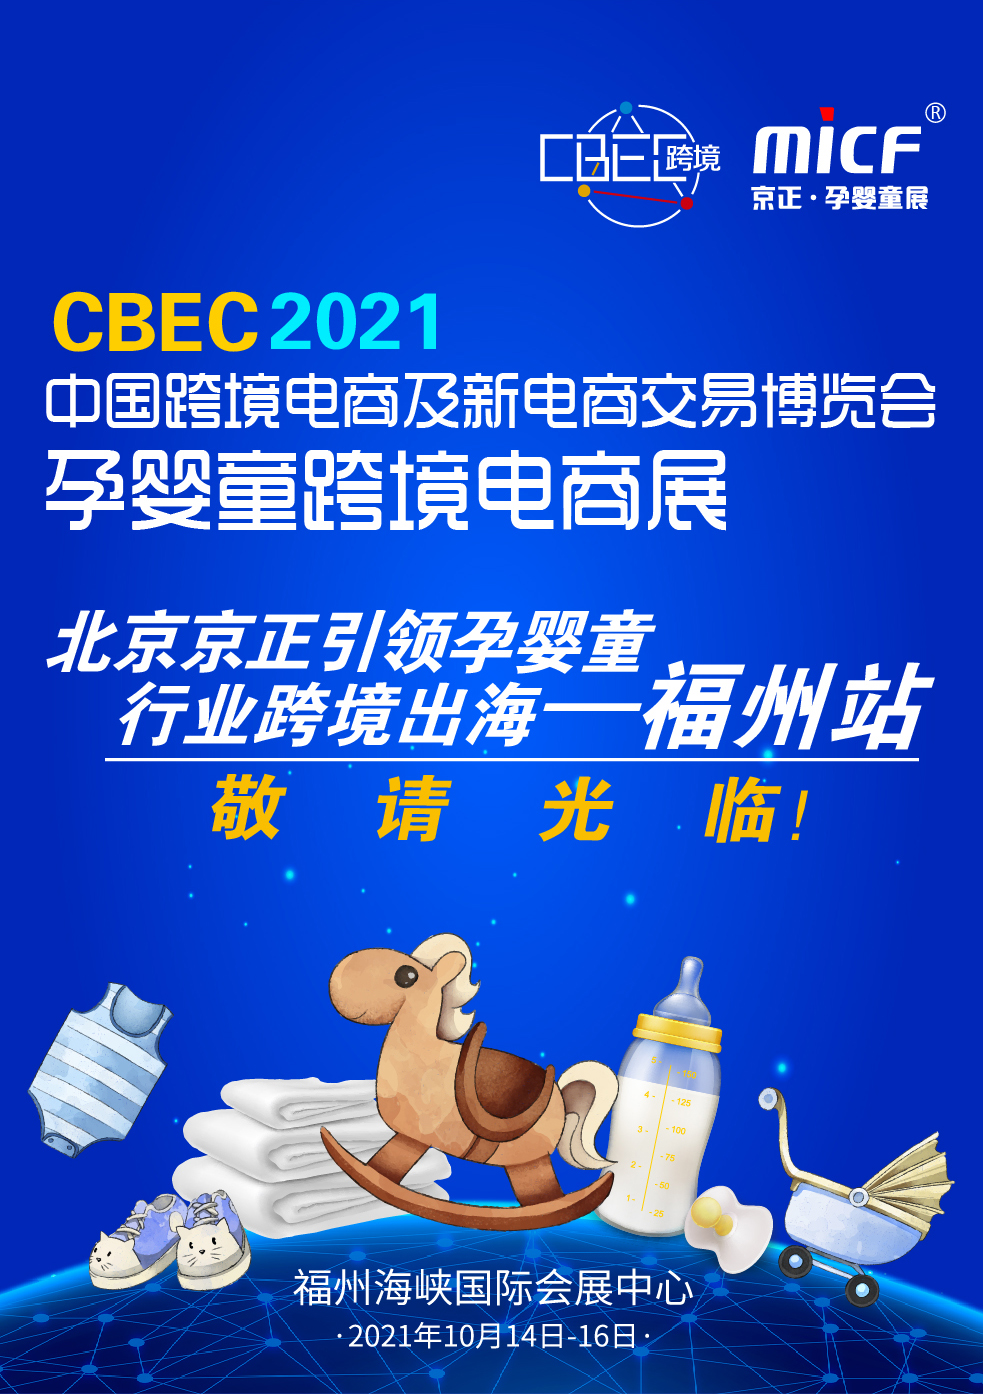 CBEC跨博会邀您一起乘风破浪,助力中国品牌出海跨境电商迎来风口 持续增长燃动引擎